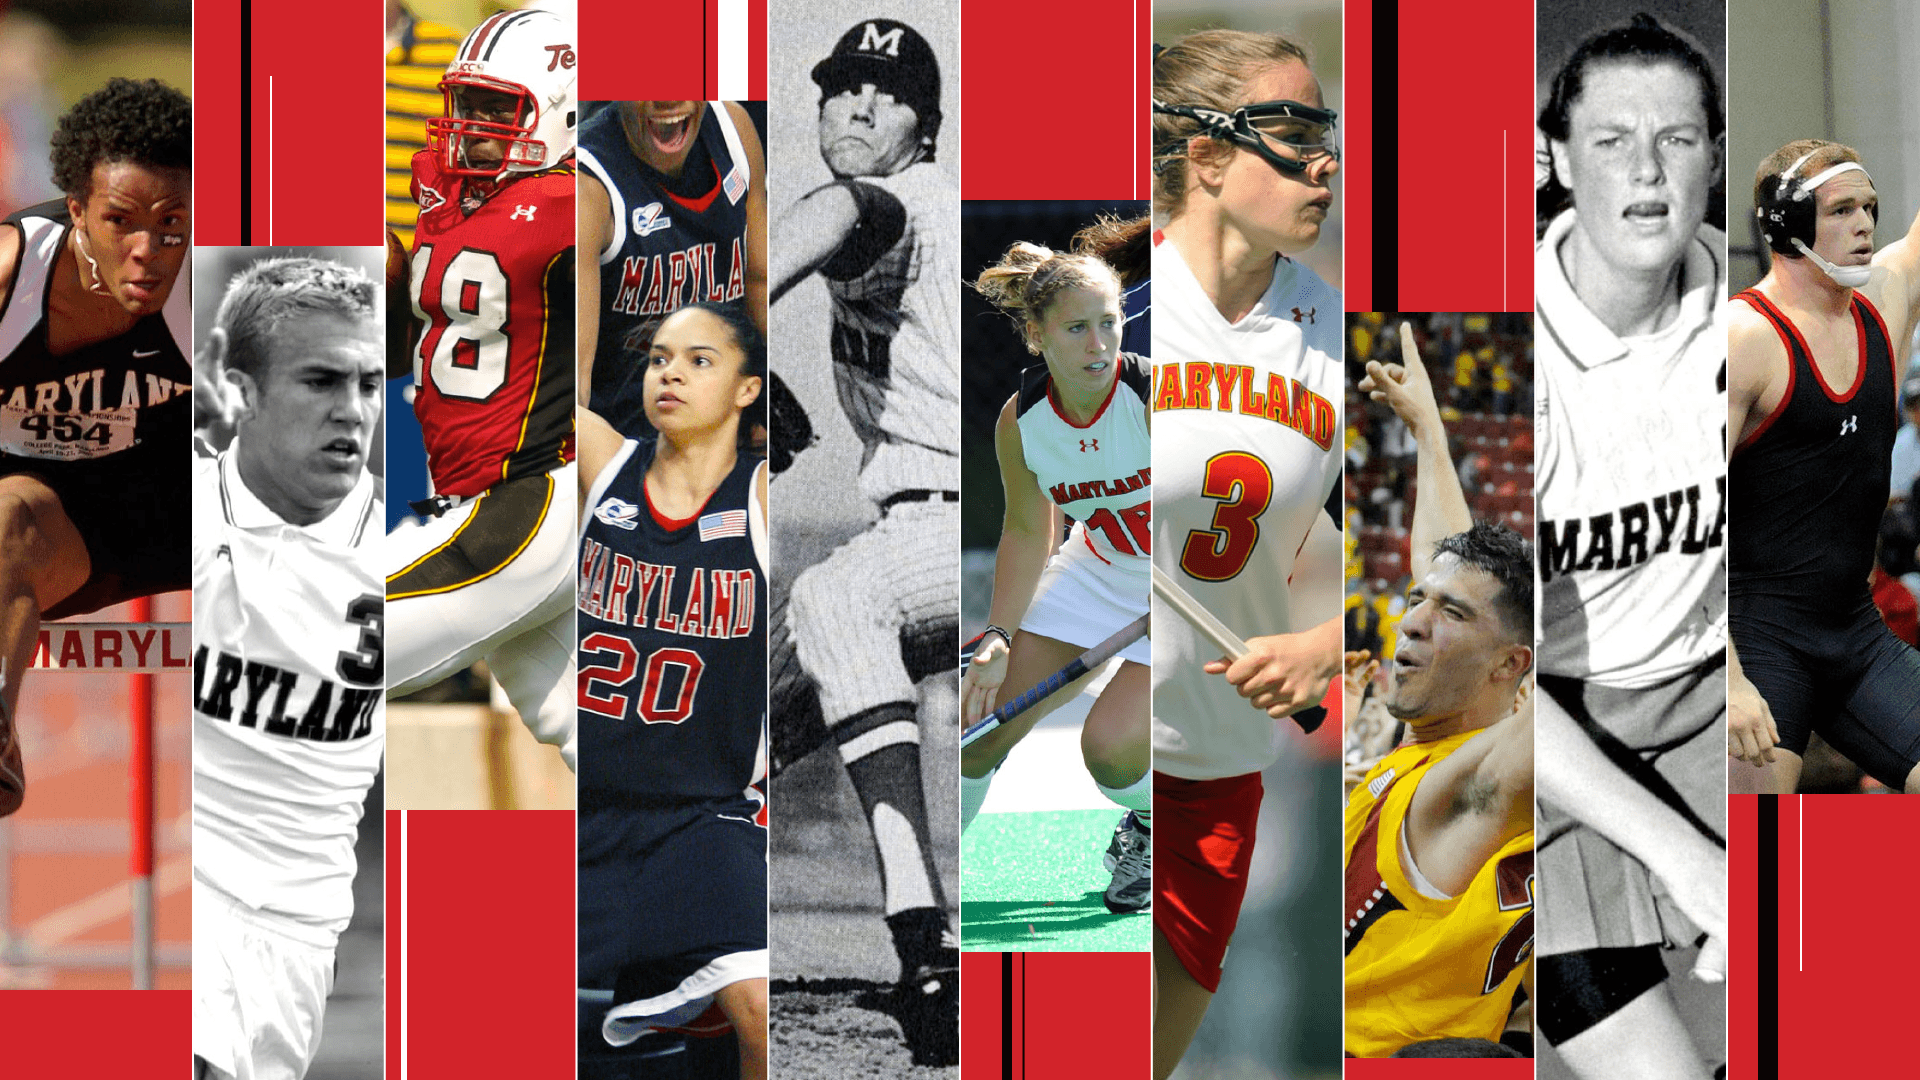 Collage of University of Maryland athletes